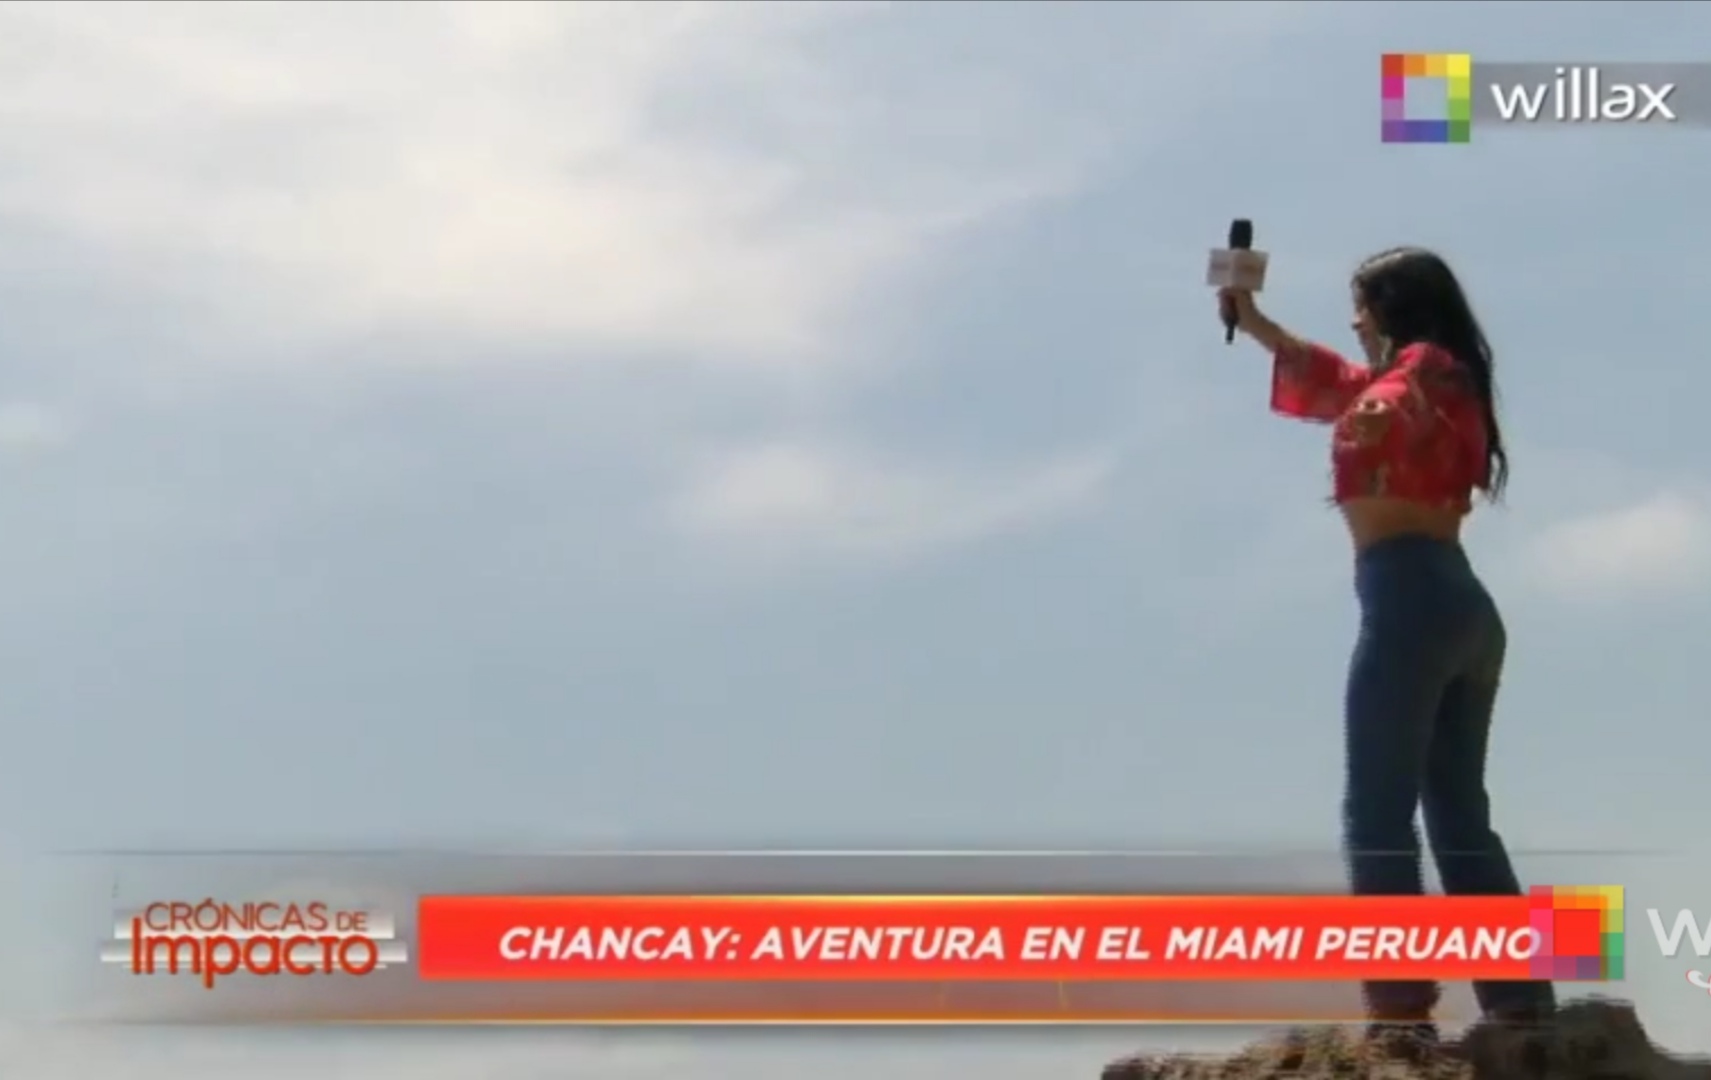 Crónicas de Impacto: Chancay, aventura en el Miami peruano